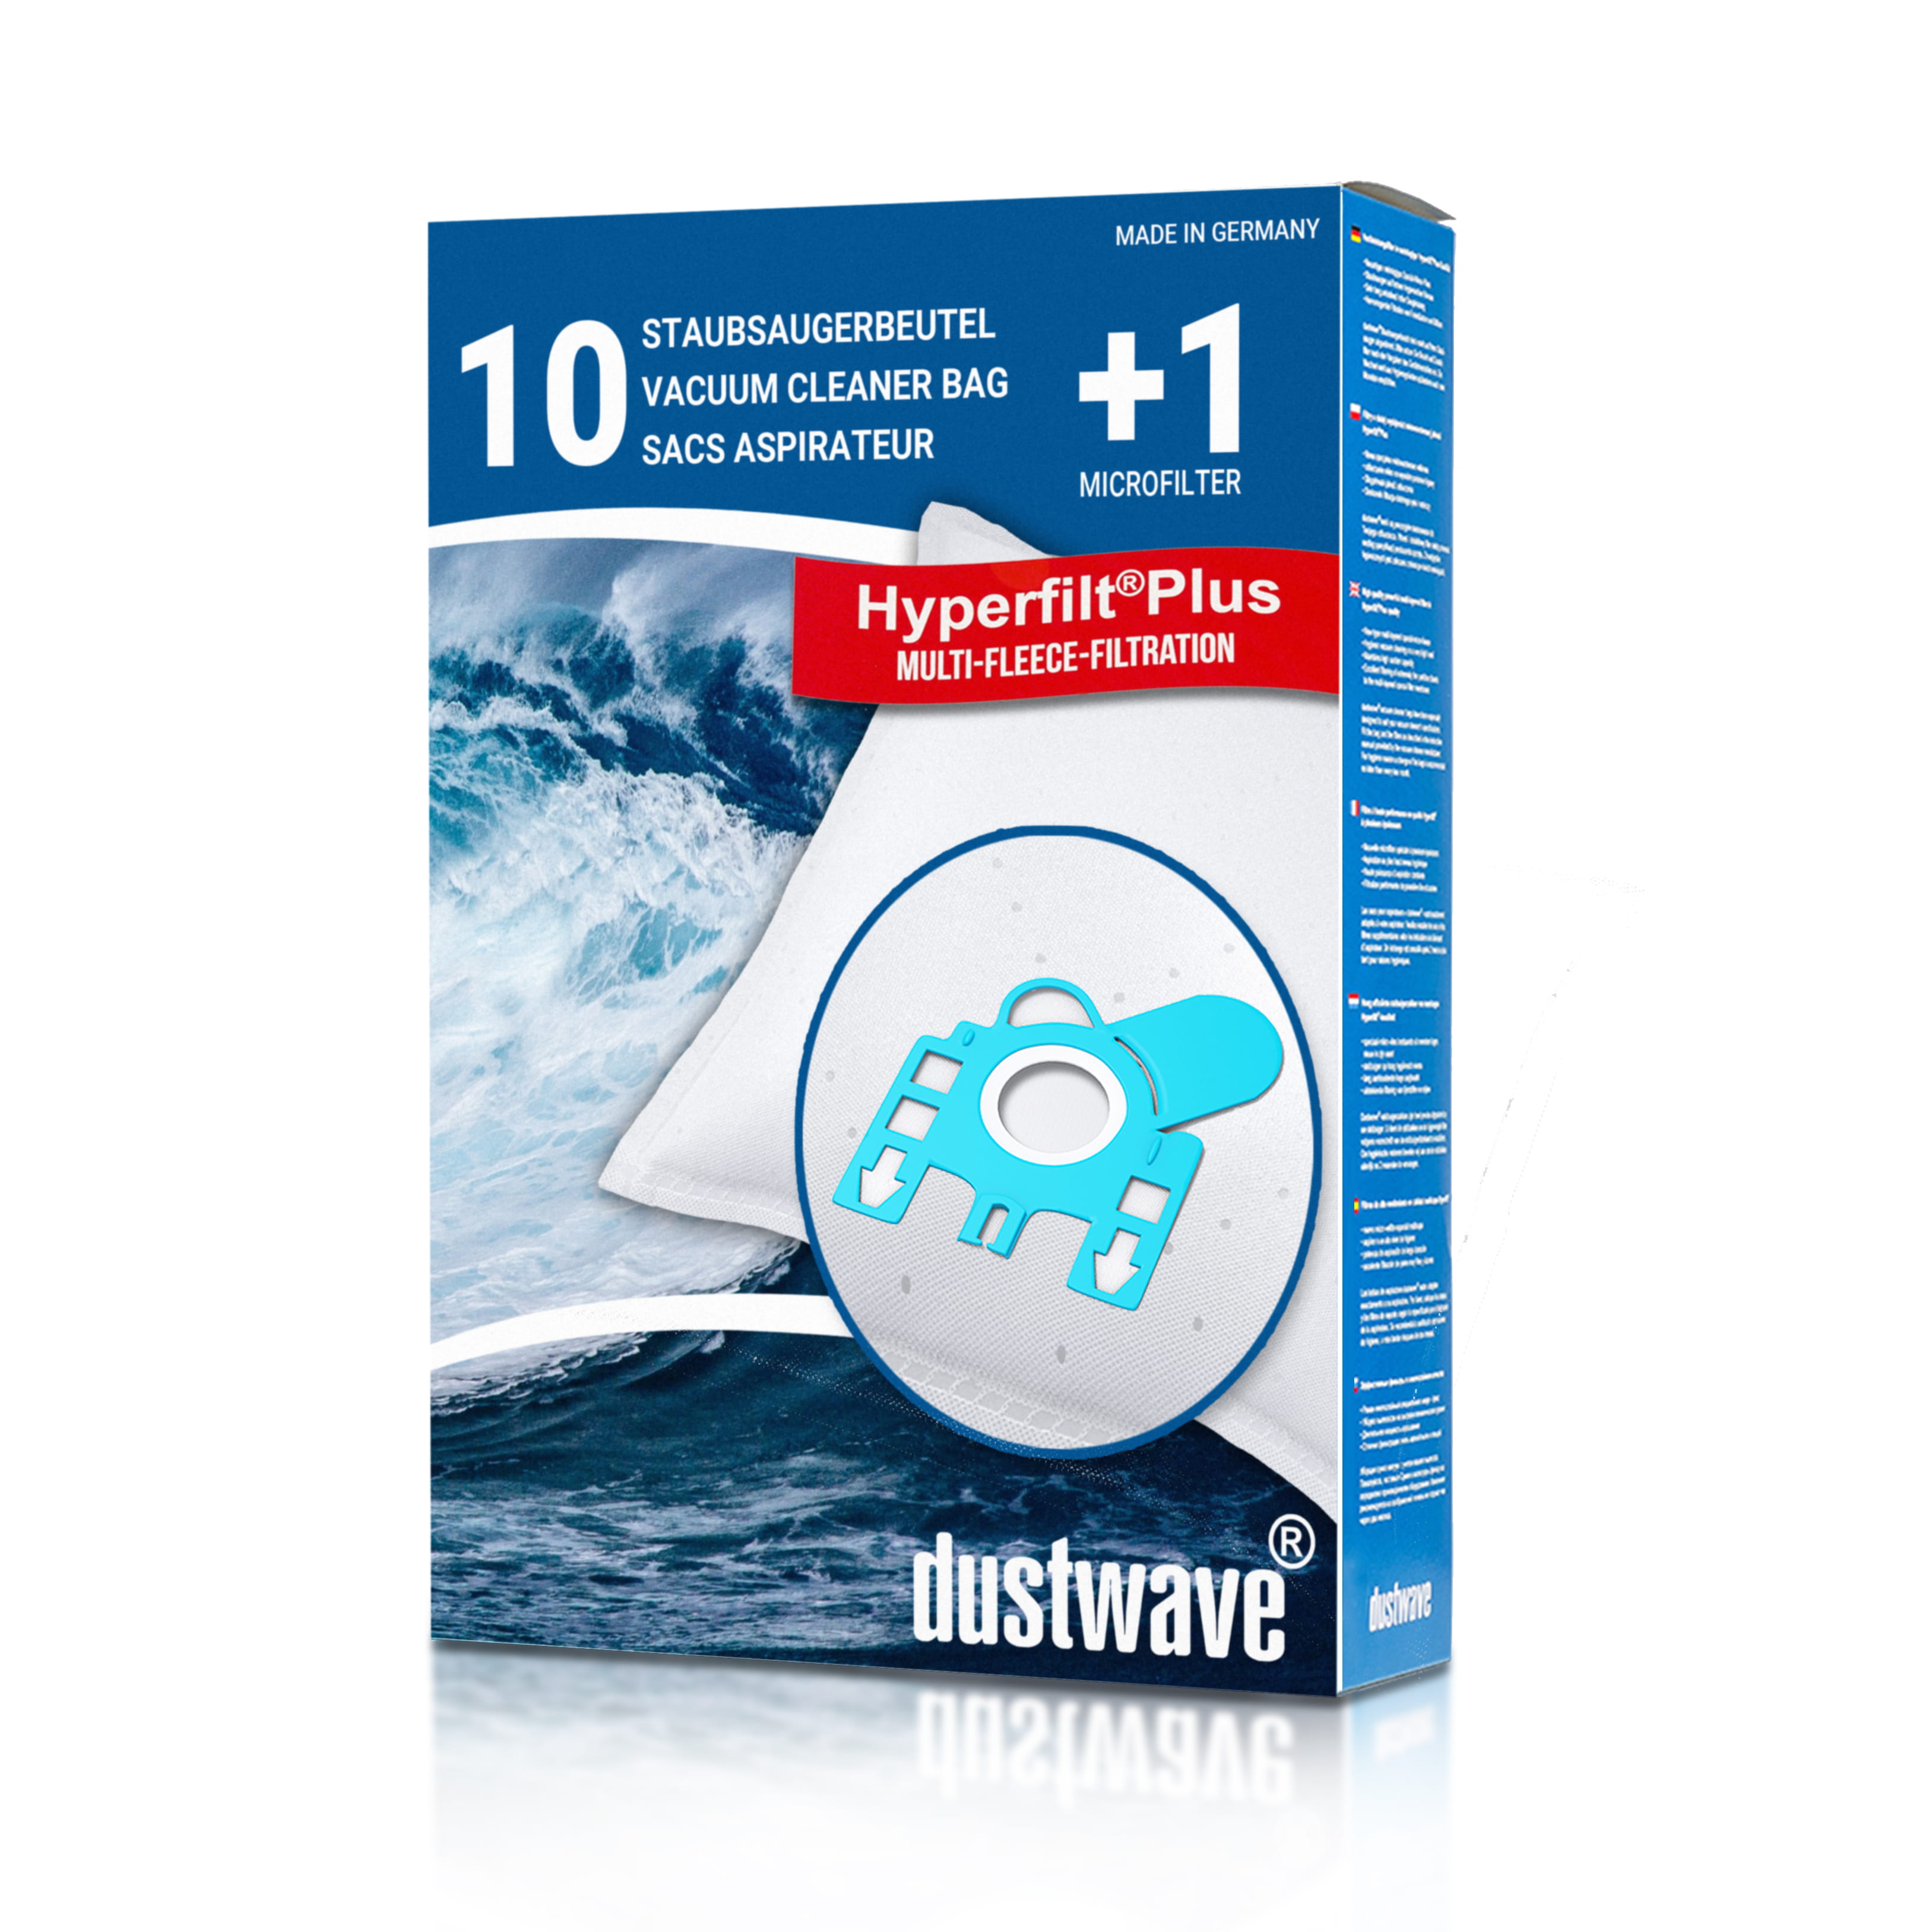 Dustwave® 10 Staubsaugerbeutel für Hoover FreeMotion - Serie (bag) - hocheffizient, mehrlagiges Mikrovlies mit Hygieneverschluss - Made in Germany